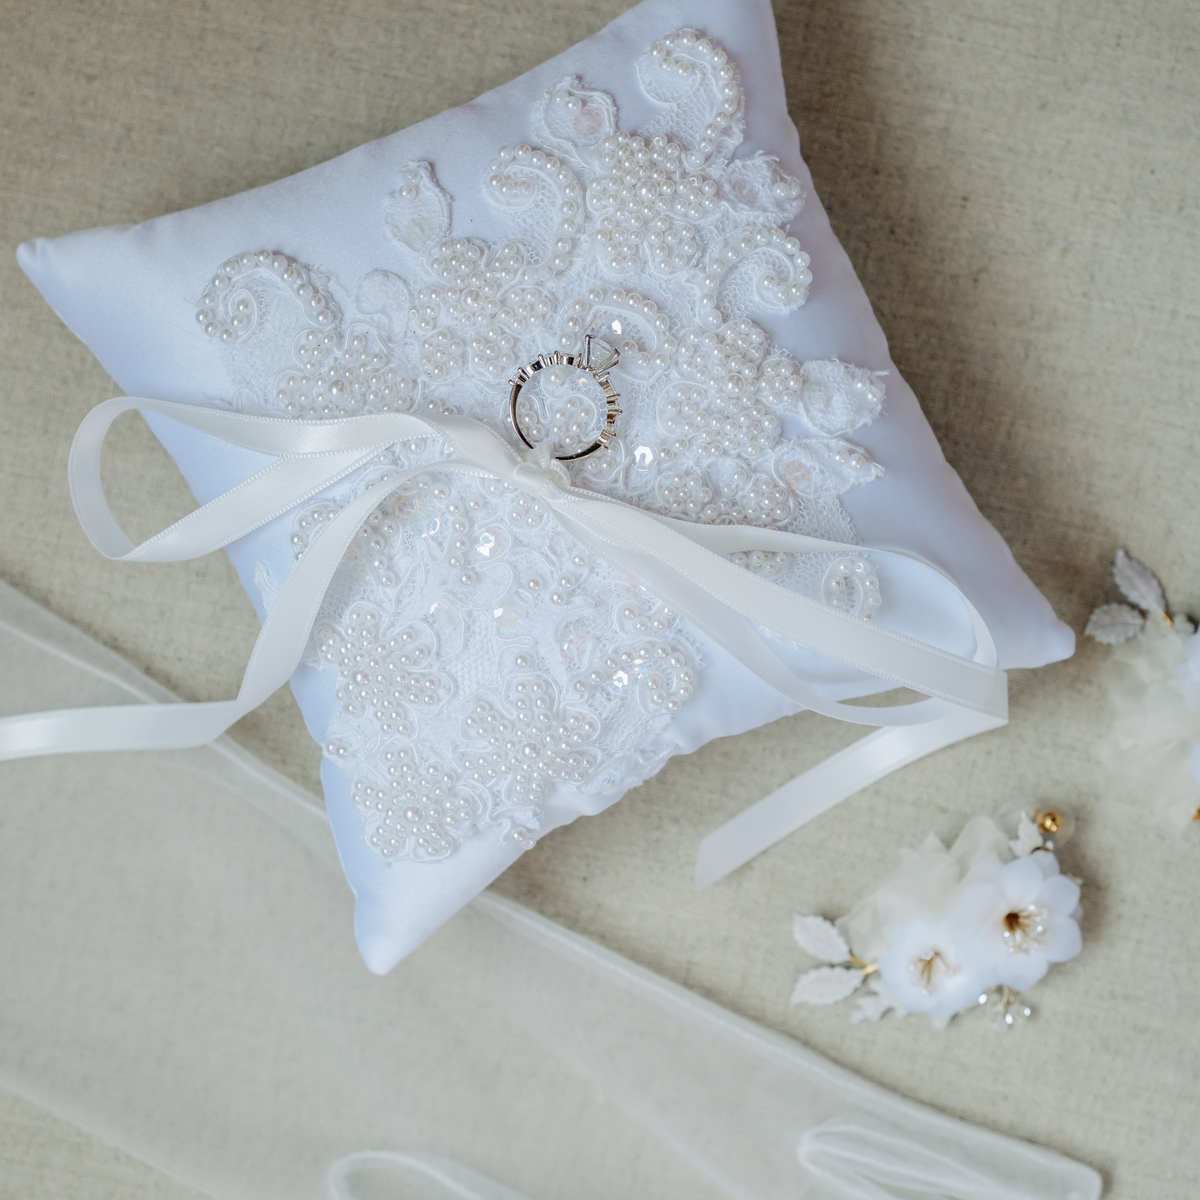 Ring Bearer Pillow Made From Wedding Dress | Unbox the Dress – Unbox ...